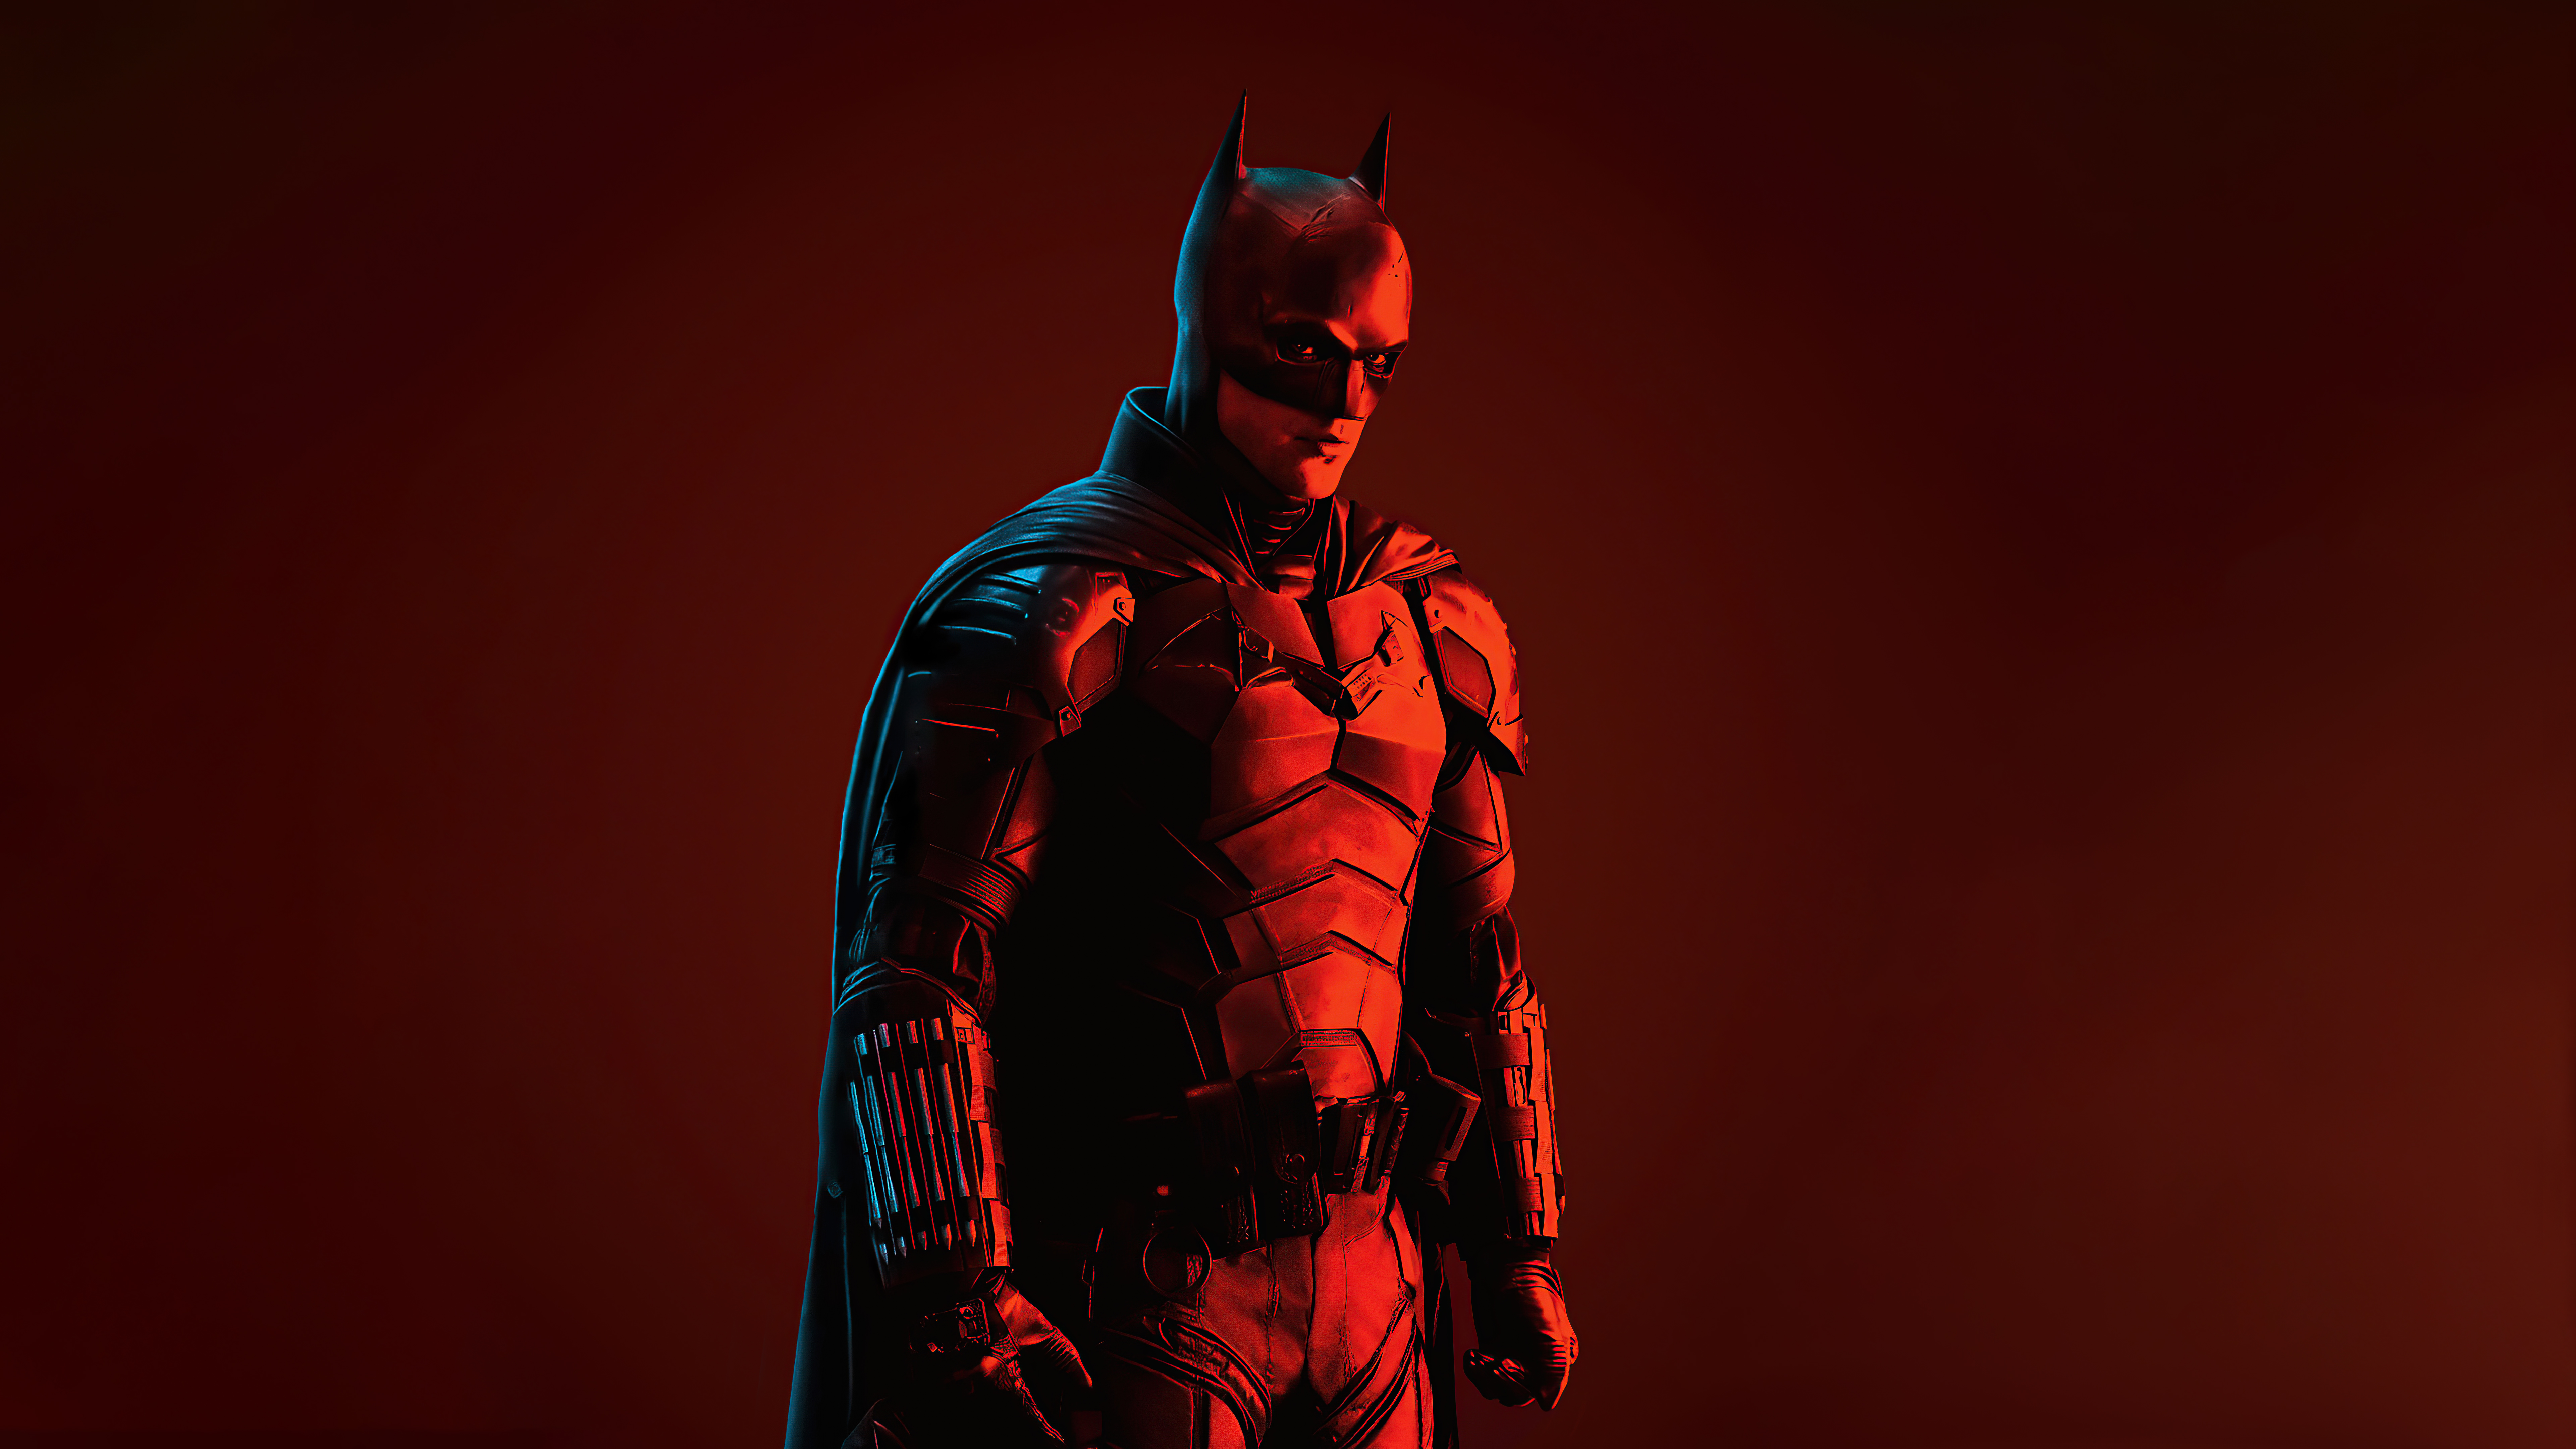 350+ 4K Batman Fondos de pantalla | Fondos de Escritorio